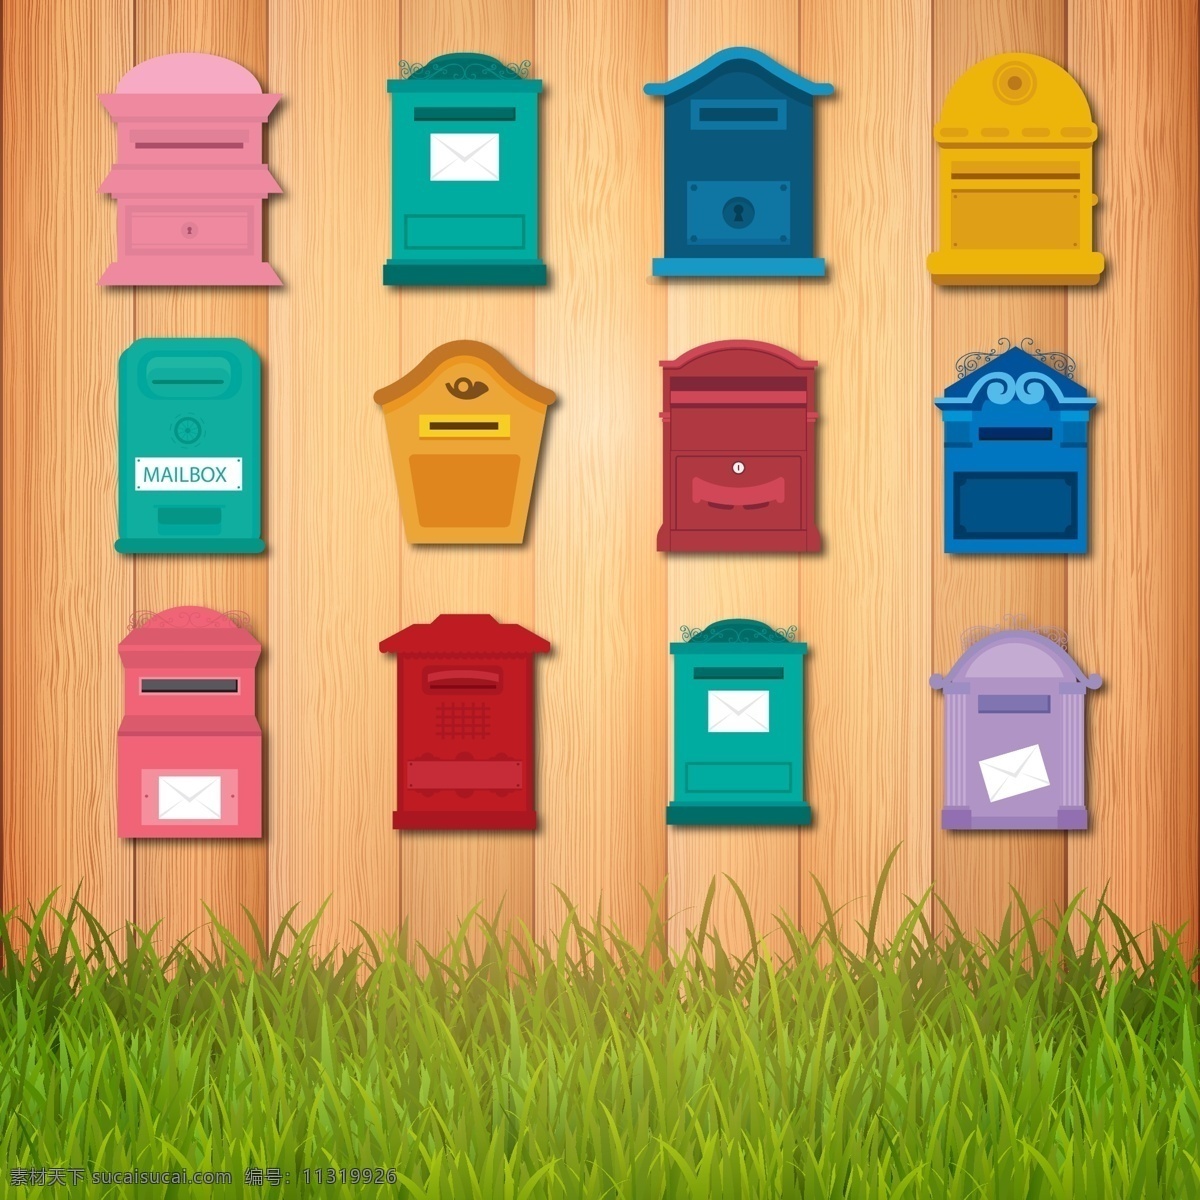 彩色 信箱 矢量 图案 草坪 木板 卡通 元素